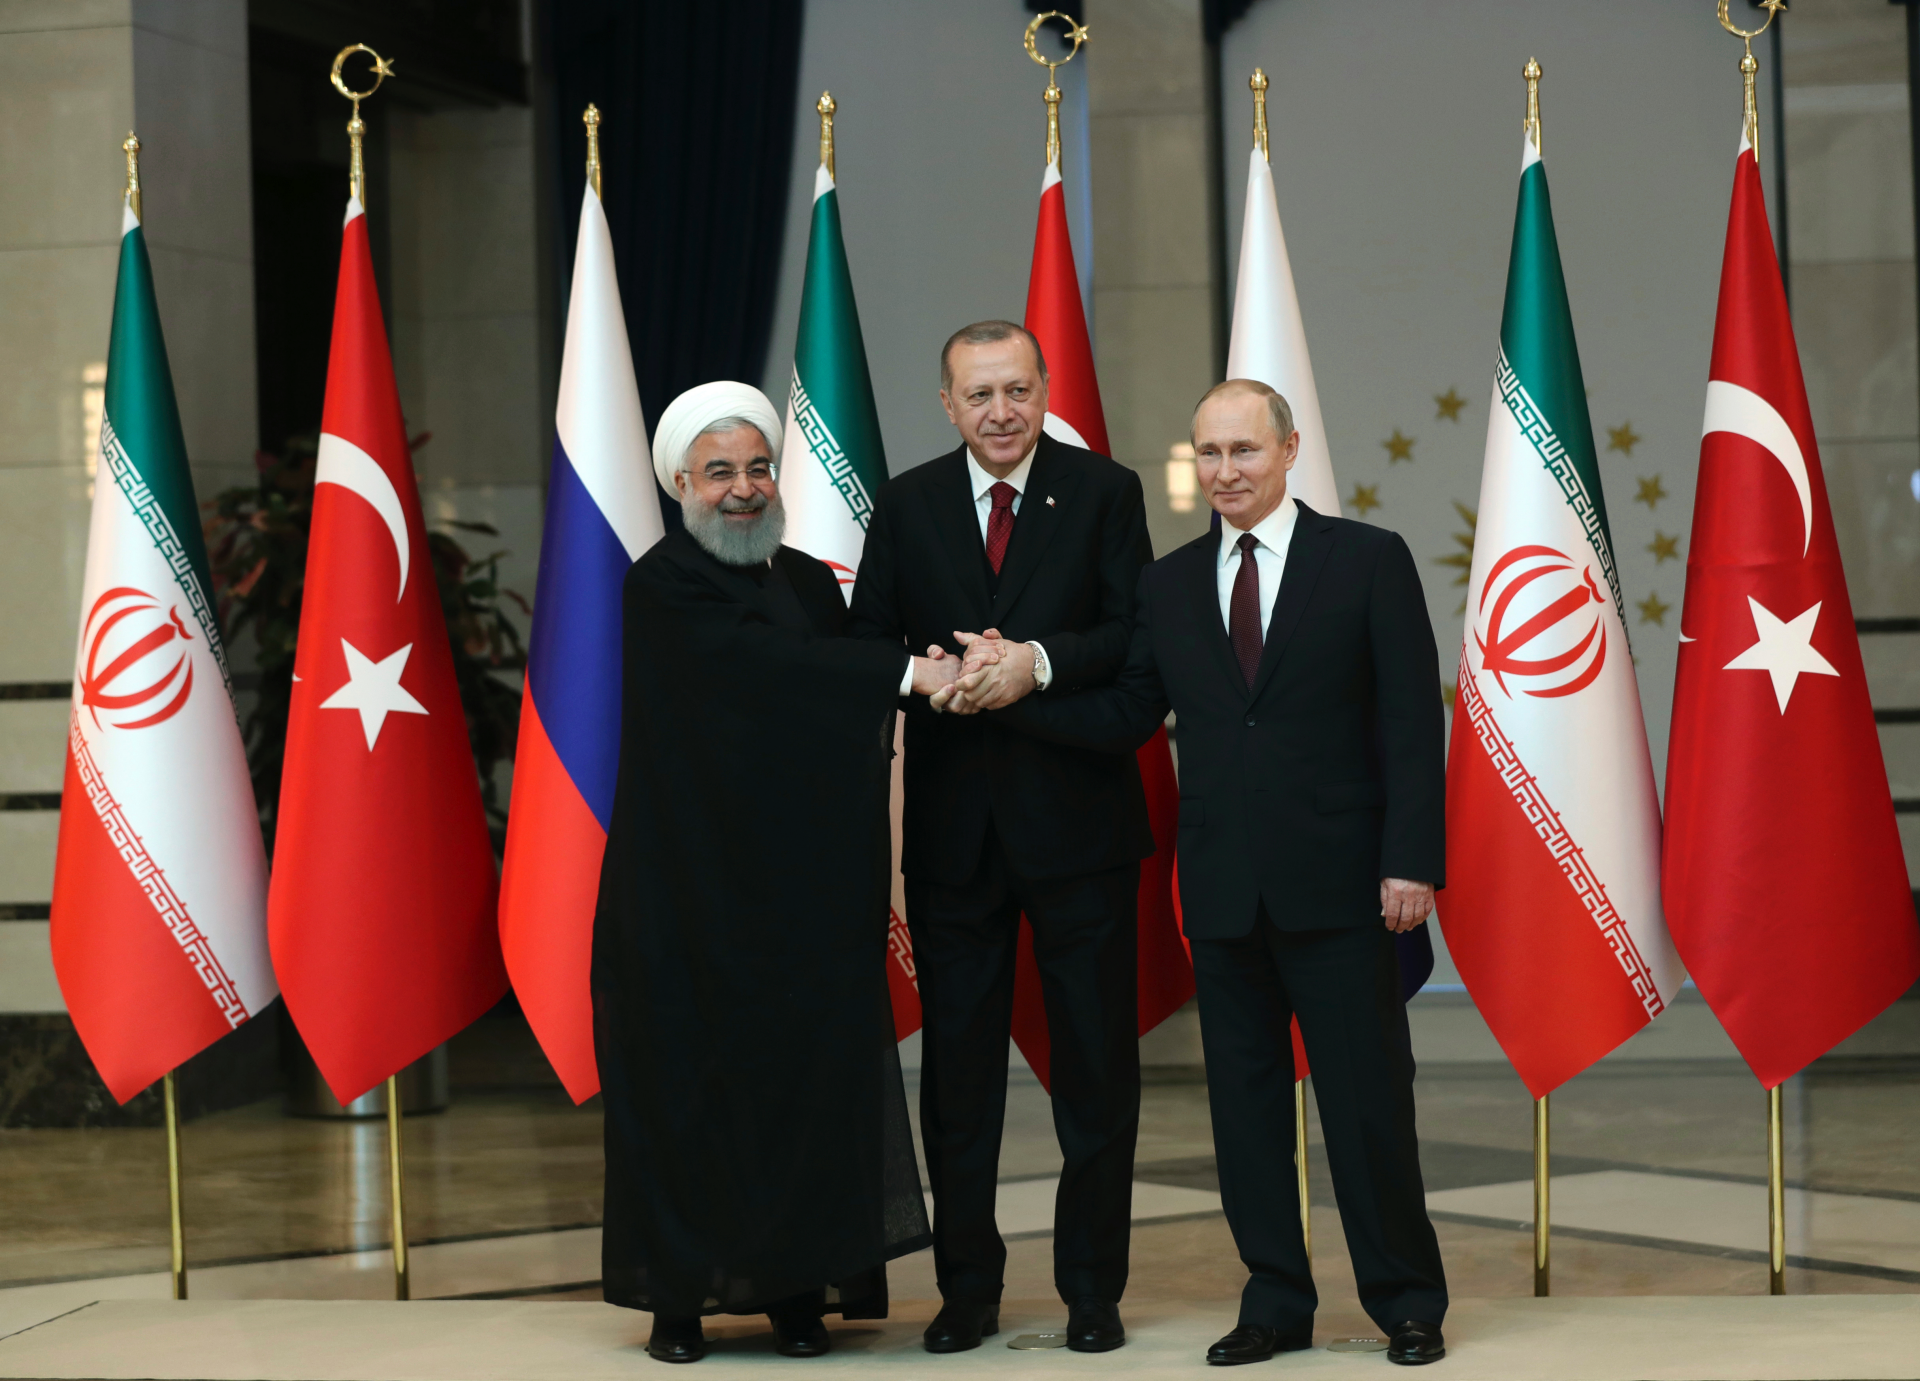 Турция сохранит своё присутствие в Сирии пока там не наступит мир